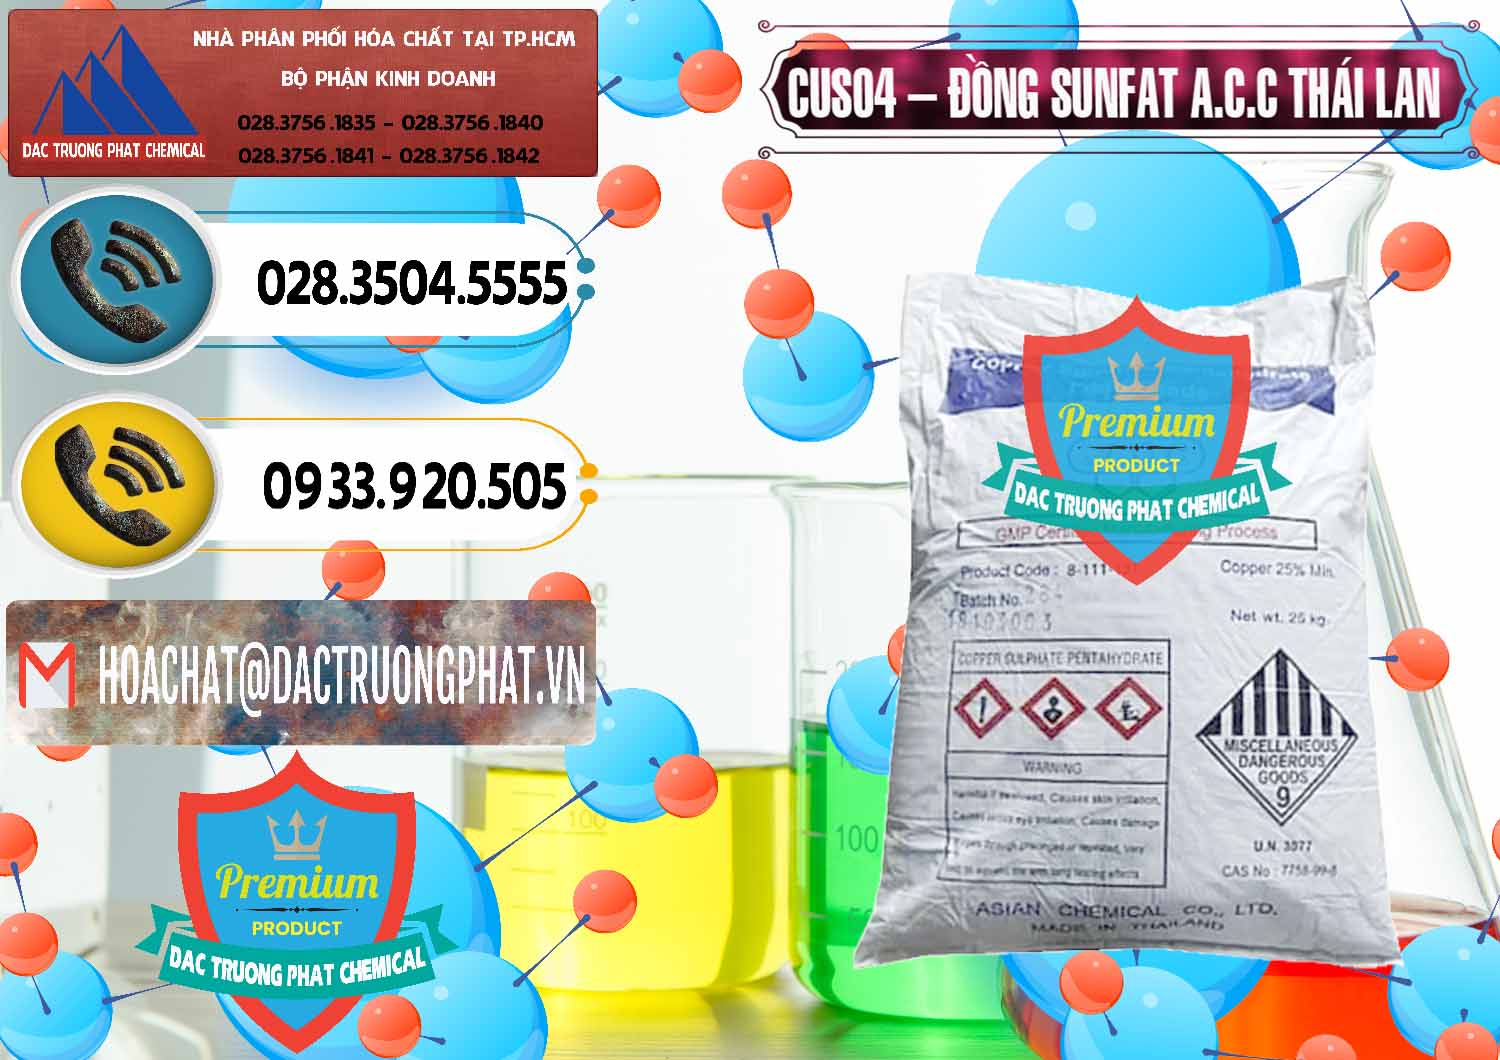 Chuyên phân phối và bán CuSO4 – Đồng Sunfat A.C.C Thái Lan - 0249 - Nơi chuyên bán và cung cấp hóa chất tại TP.HCM - hoachatdetnhuom.vn